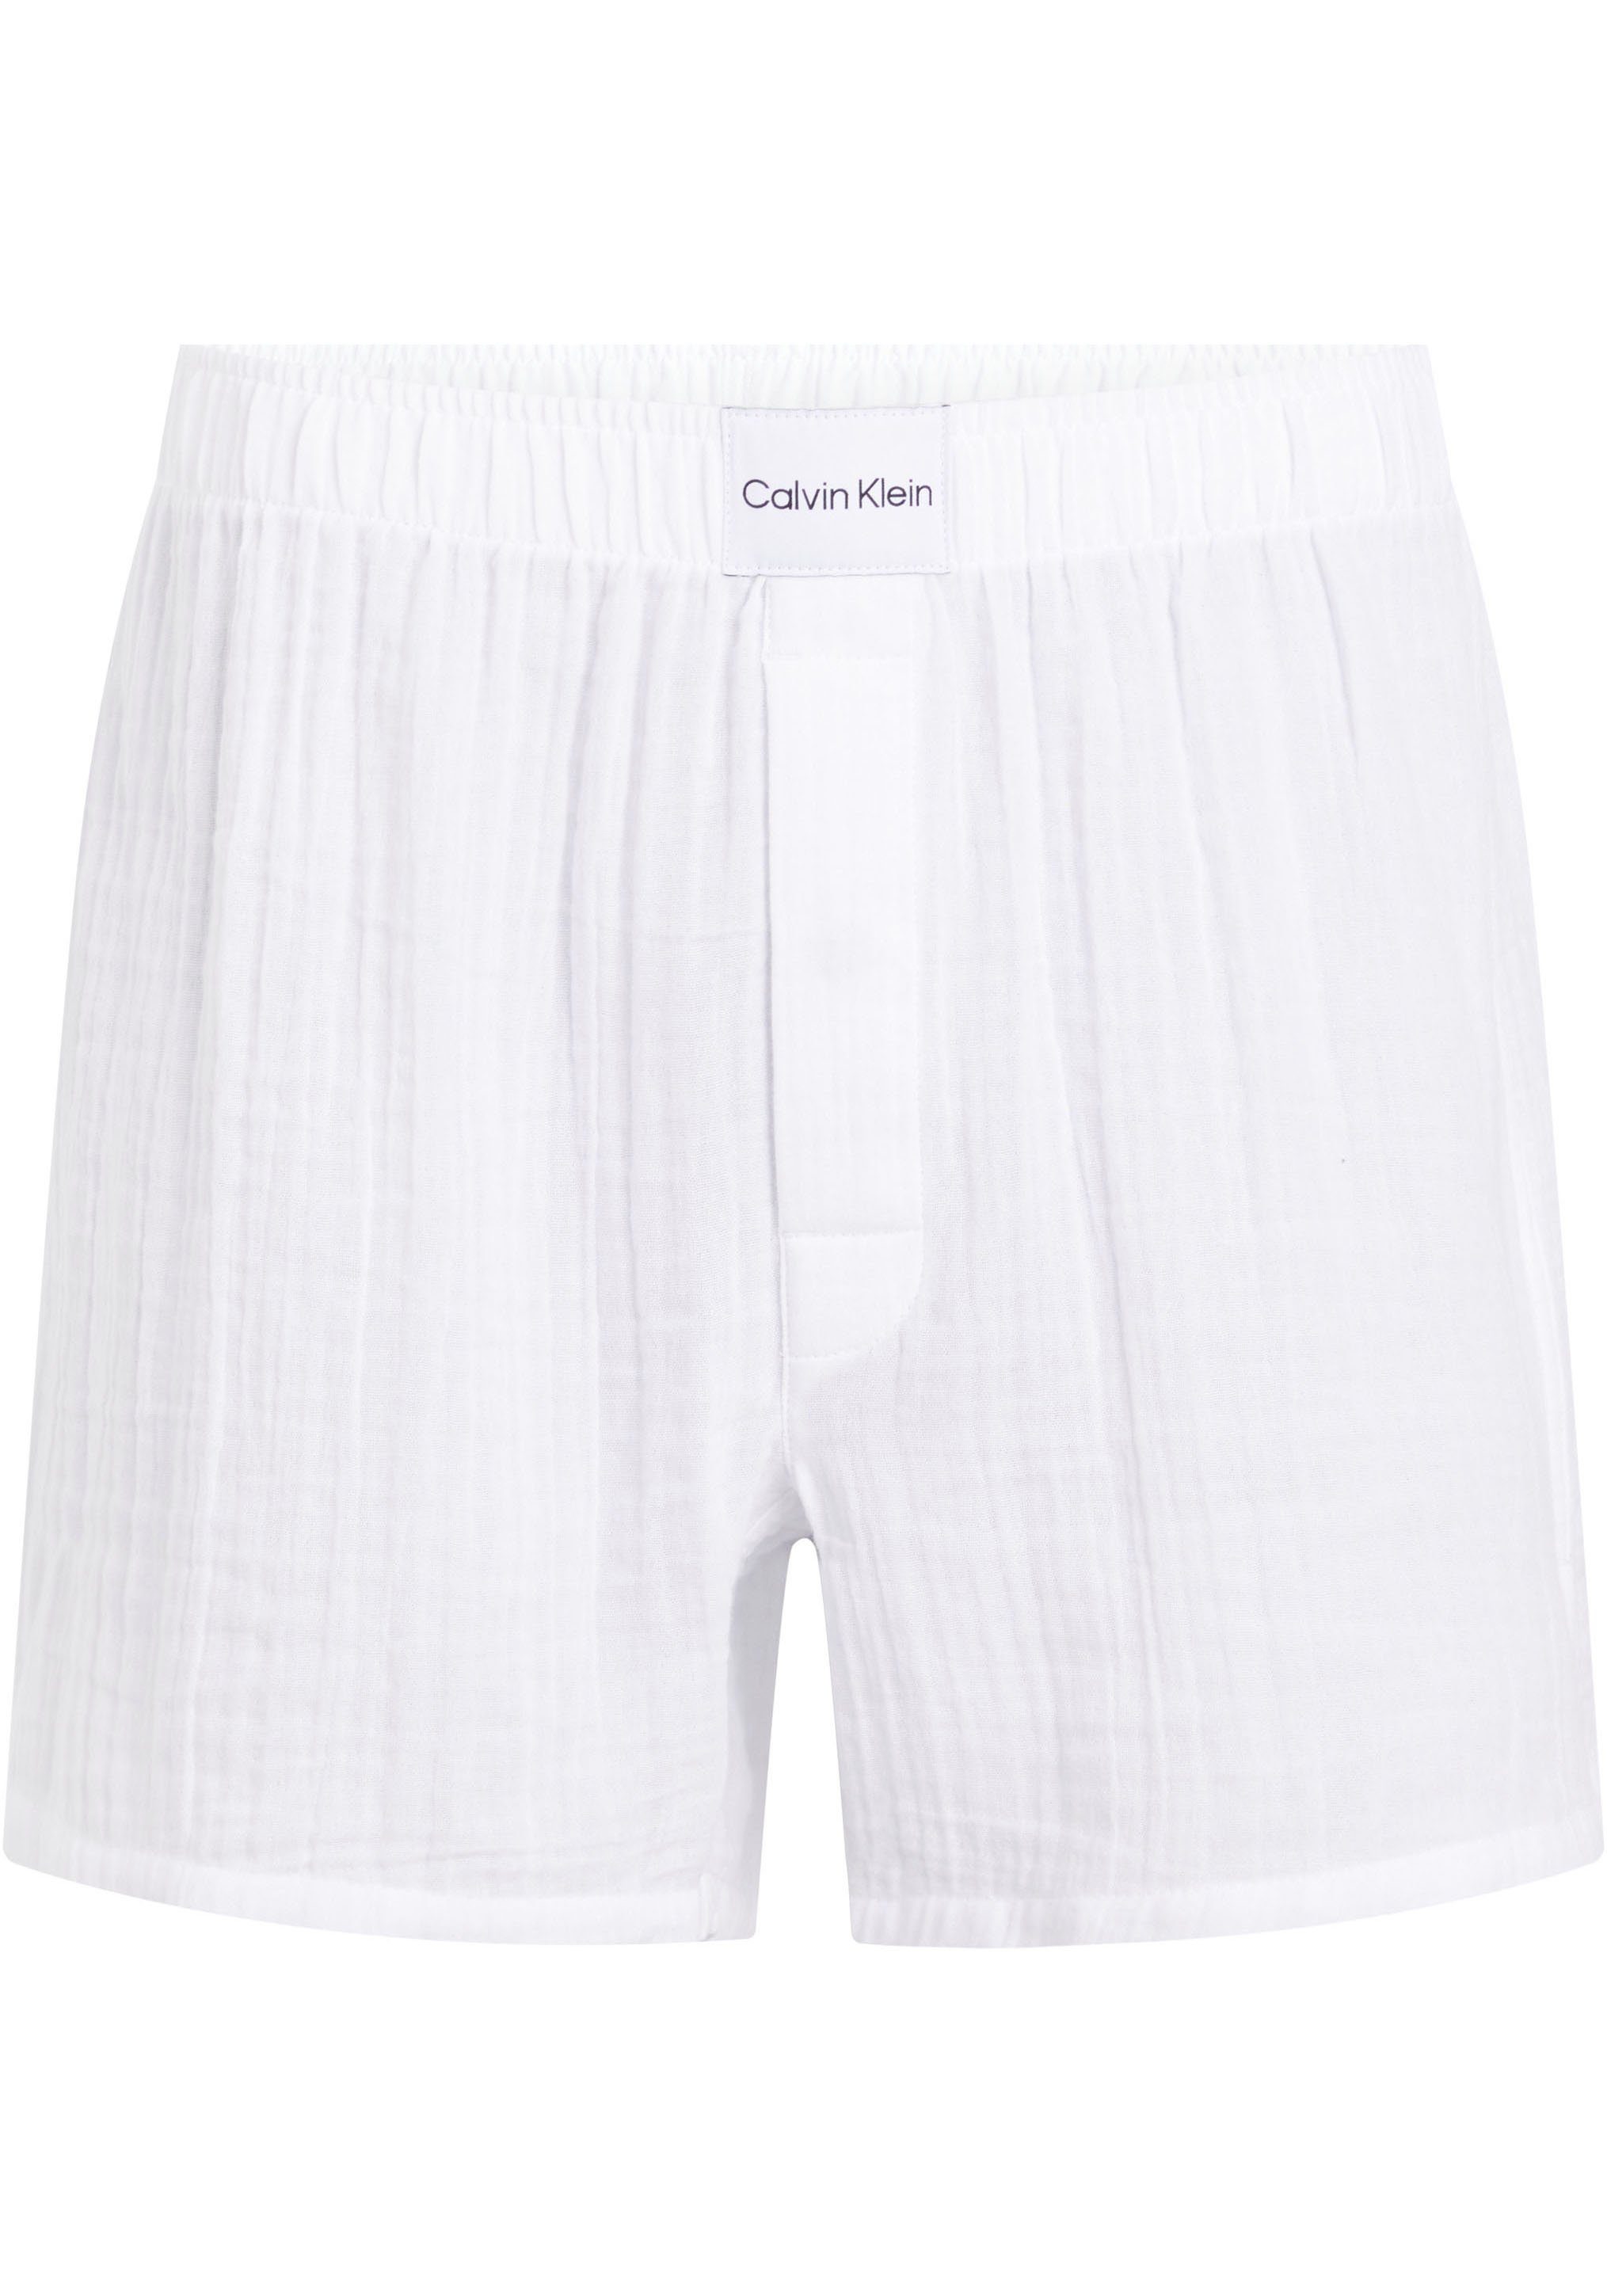 BOXER mit SLIM mit Calvin Bund, normaler Leibhöhe Klein dem Pyjamashorts Bequeme Underwear auf Markenlabel Passform